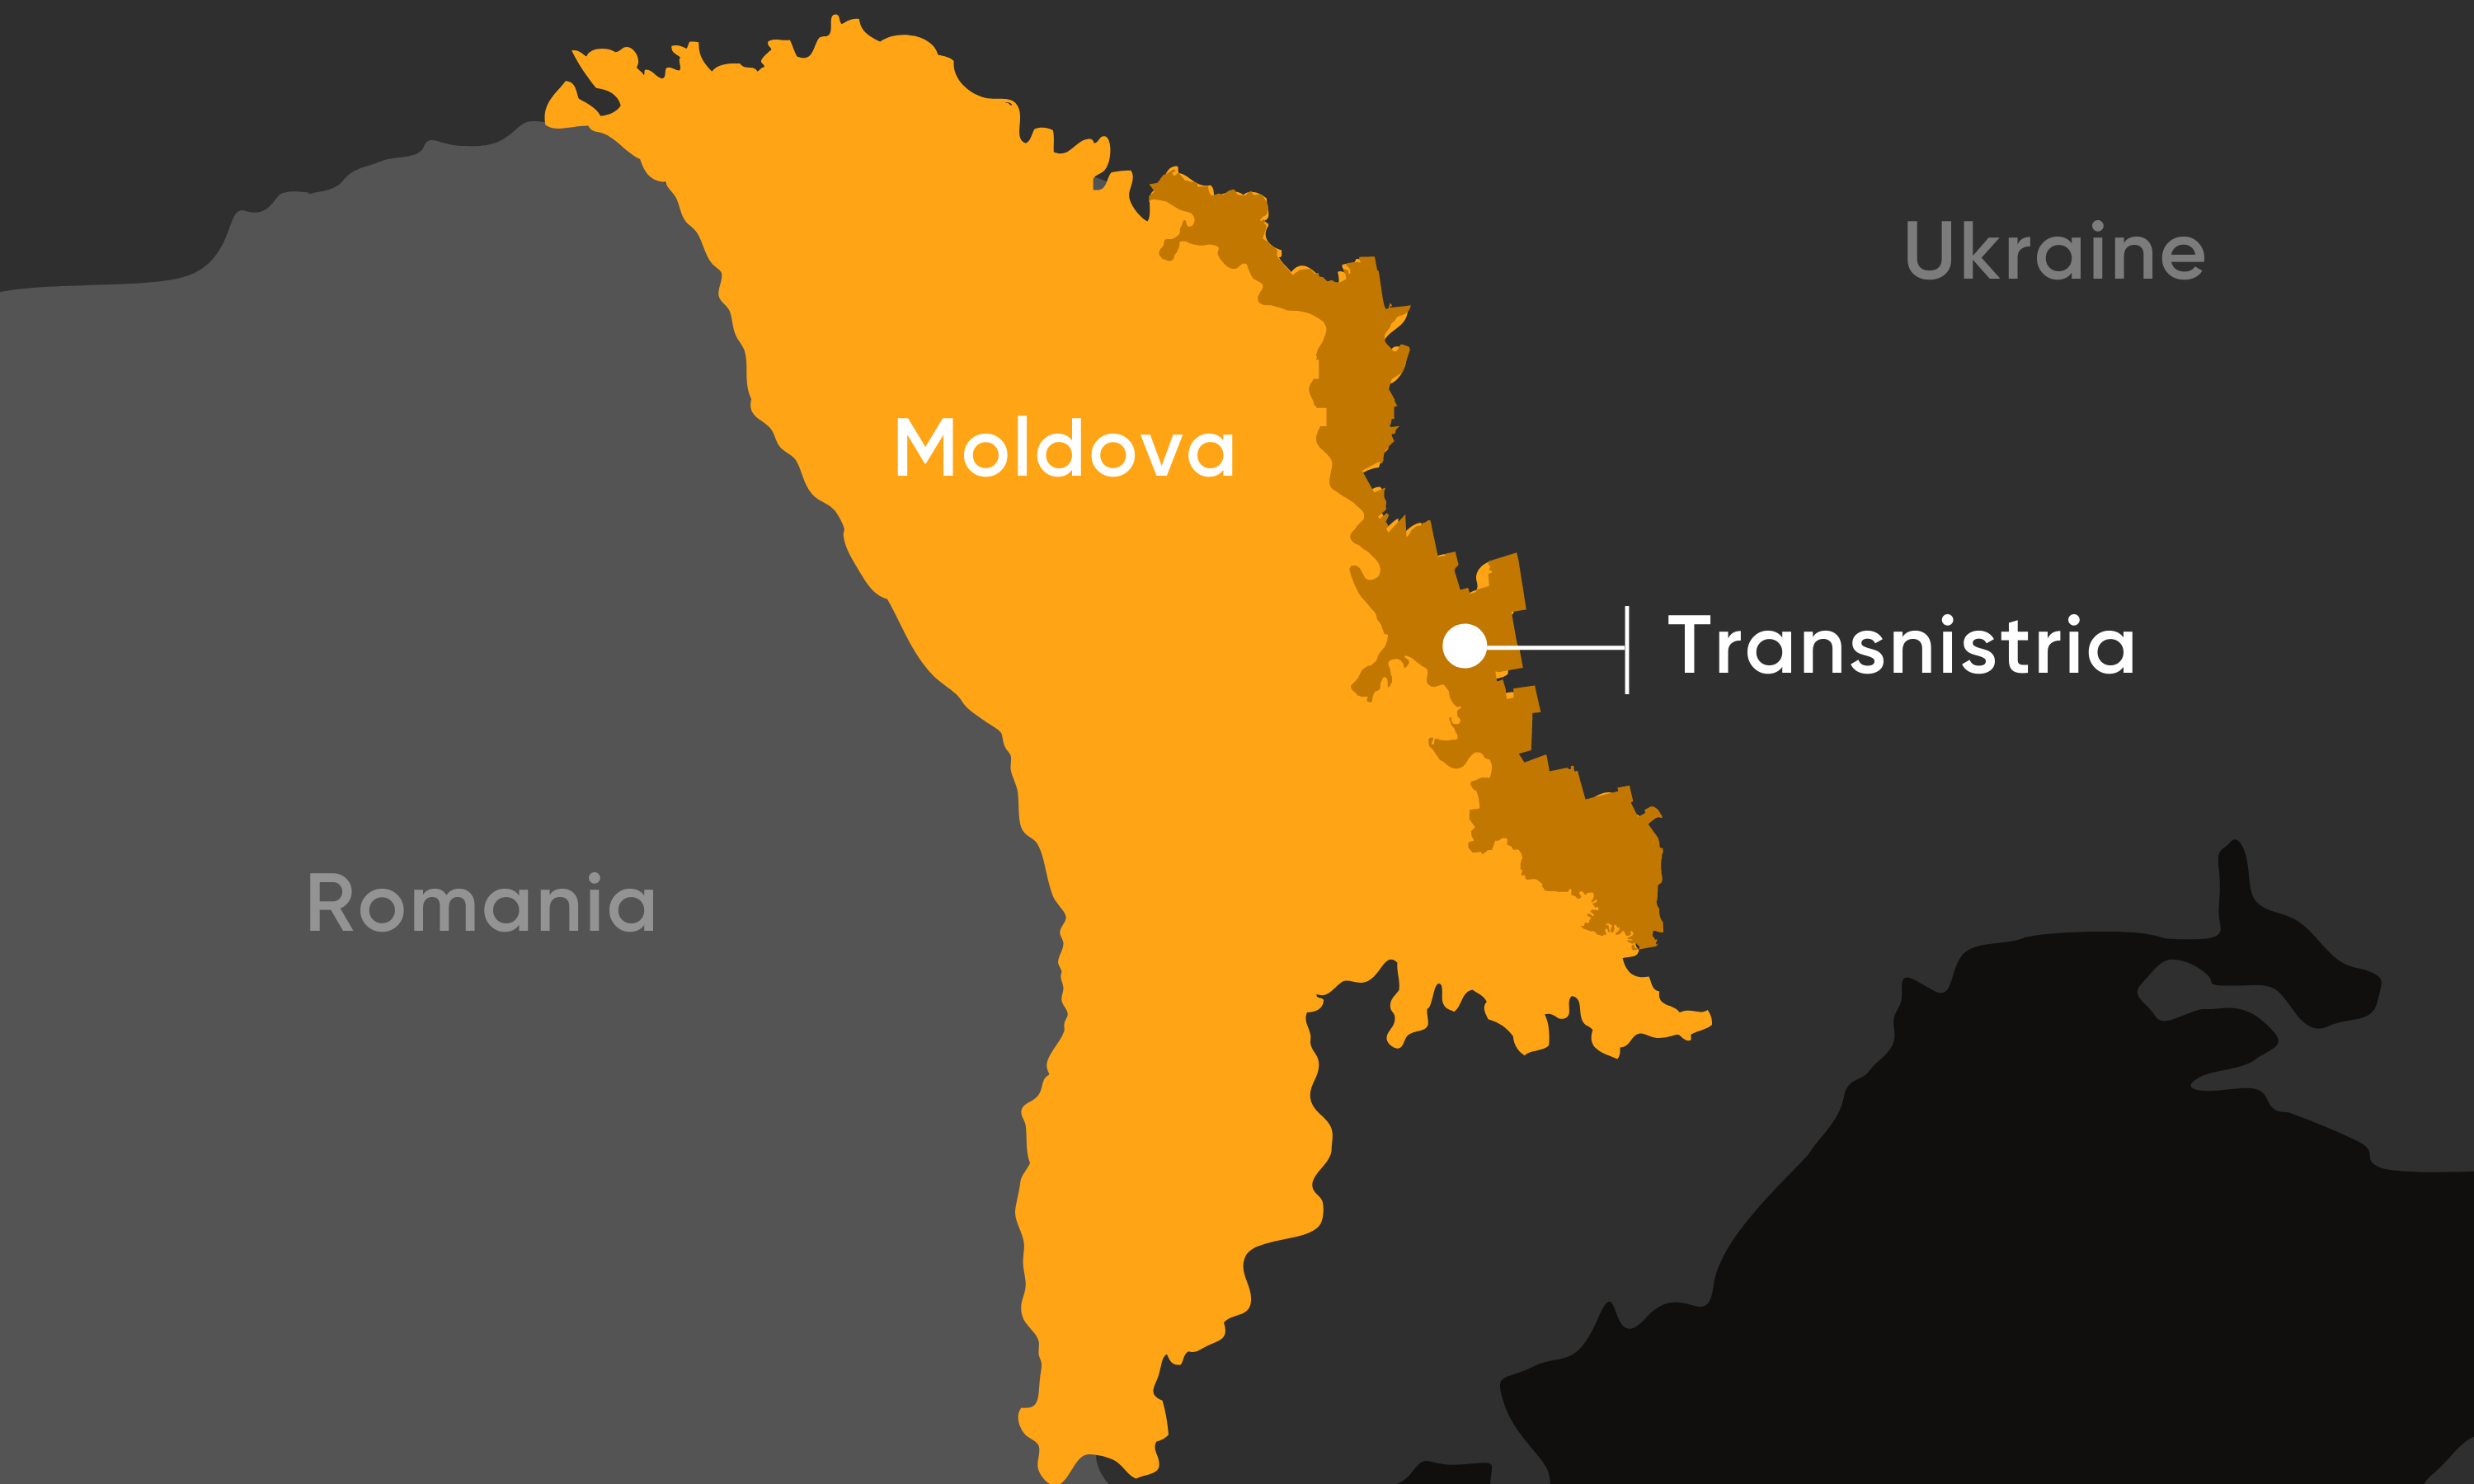 Ukraine and Moldova map